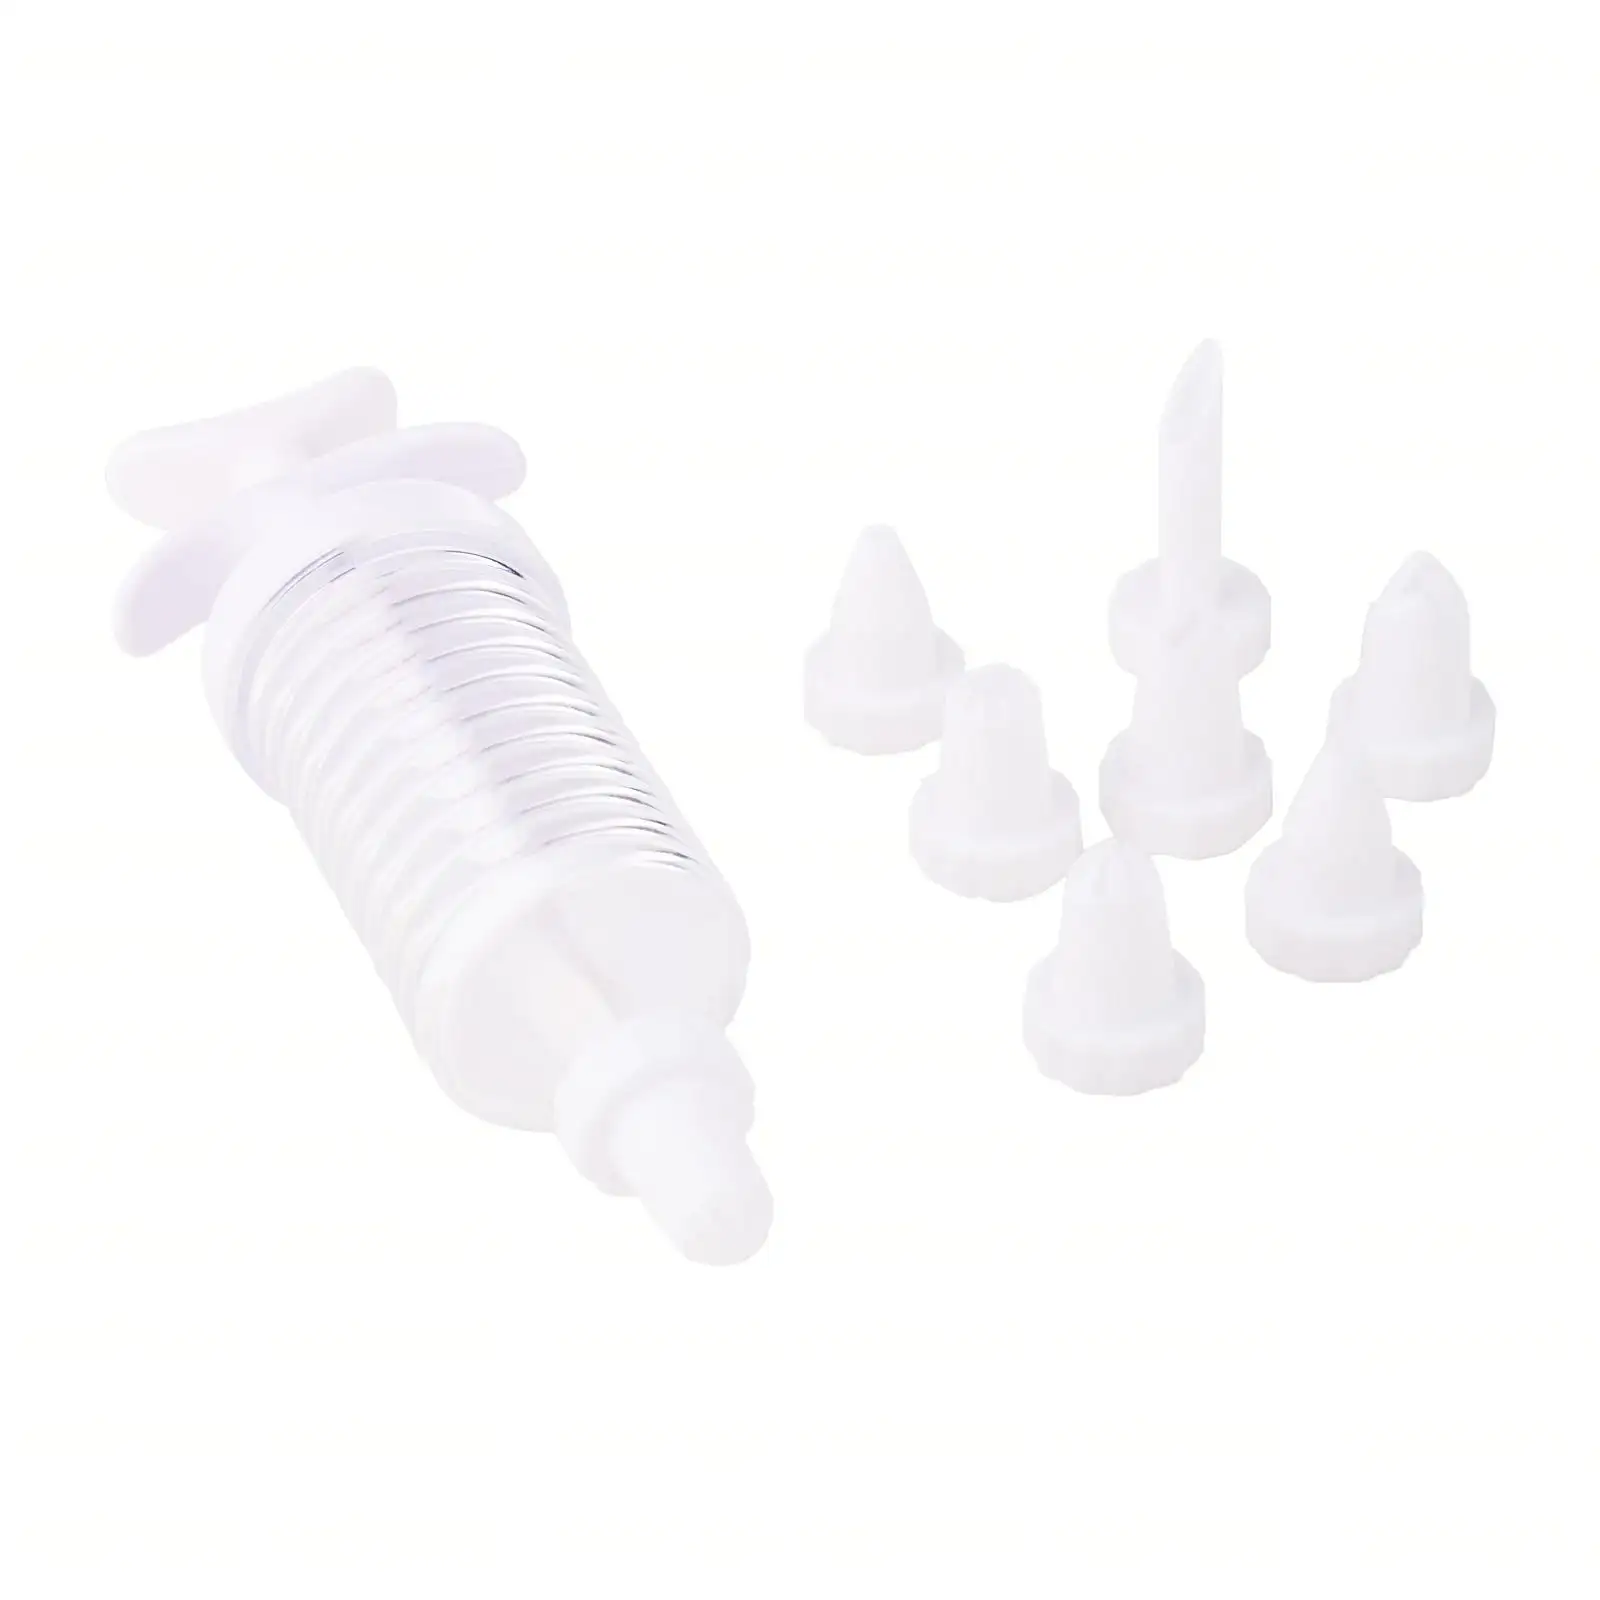 थोक मूल्य के साथ प्लास्टिक सफेद 8 नलिका विभिन्न प्रकार के टुकड़े पिस्टन 8 पीसी नलिका शीर्ष गुणवत्ता